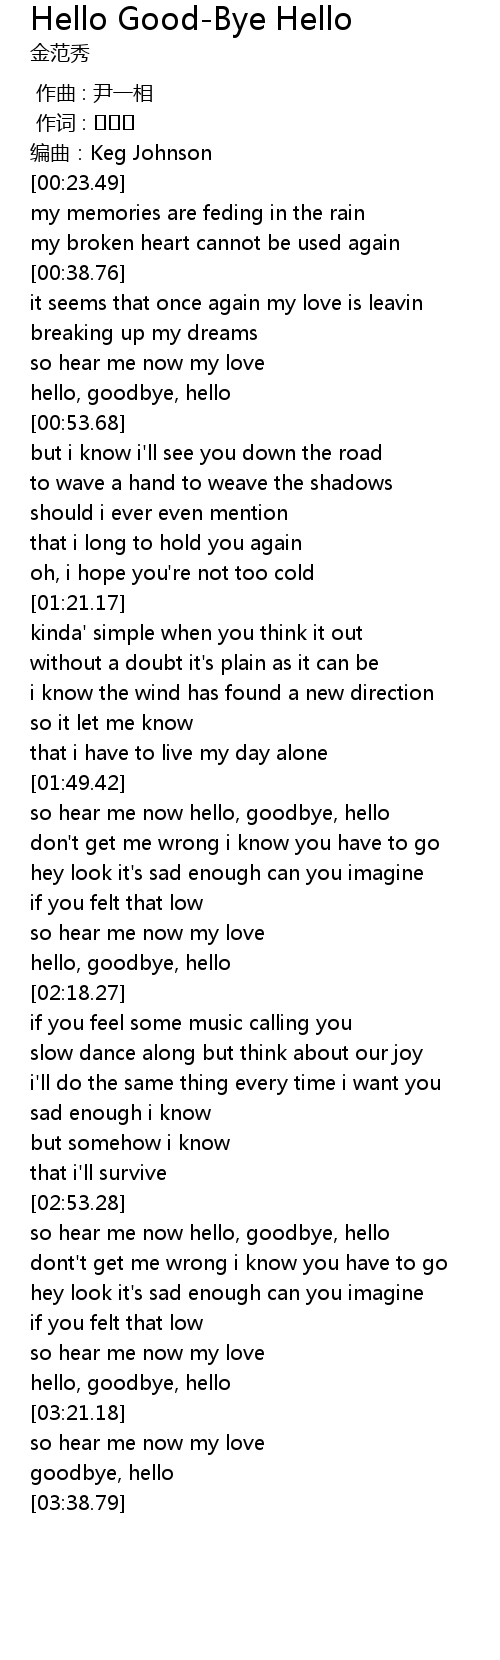 Goodbye hello lyrics